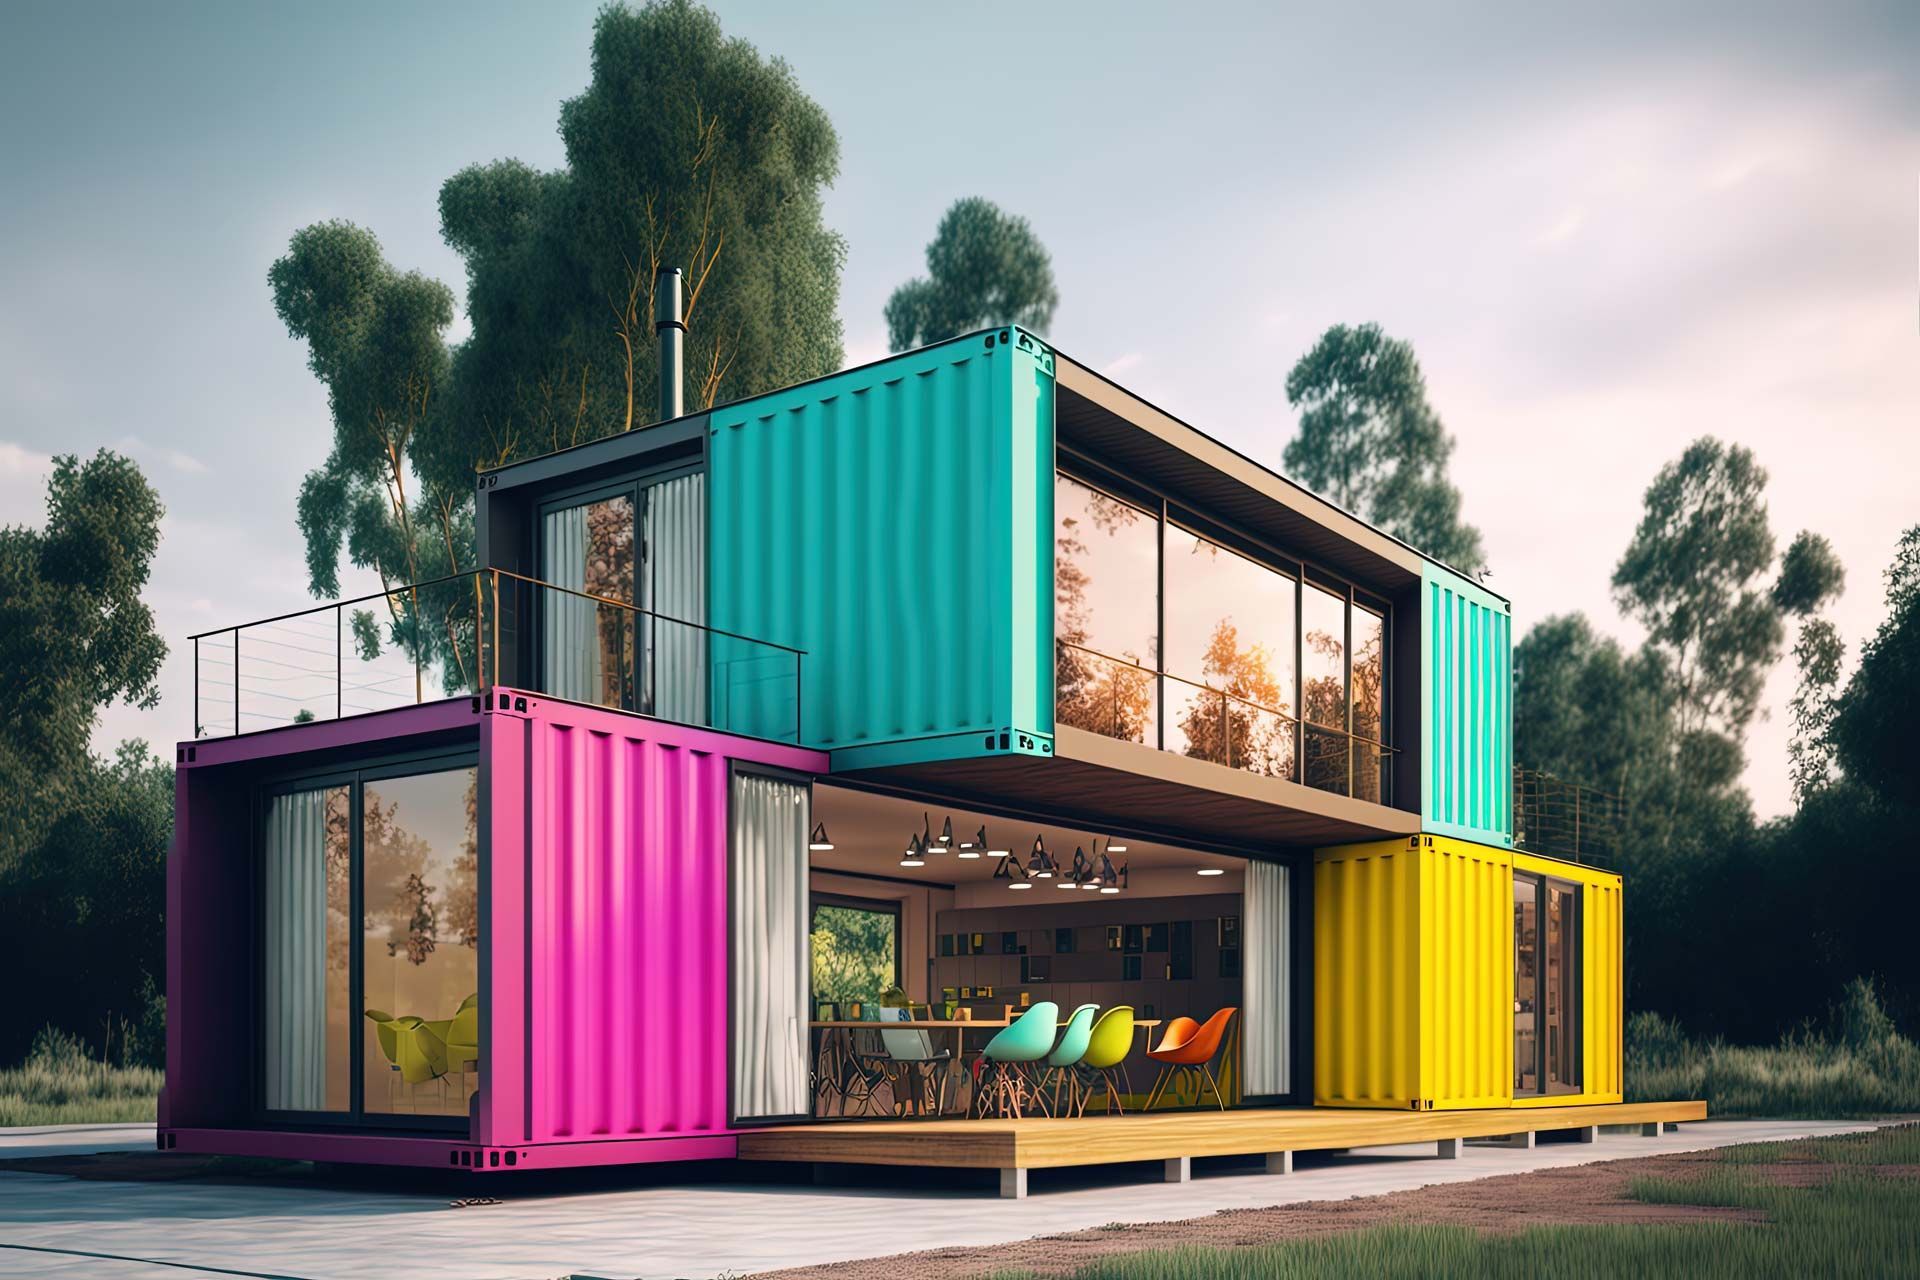 Un concept de bâtiment créer à partir de conteneurs peints